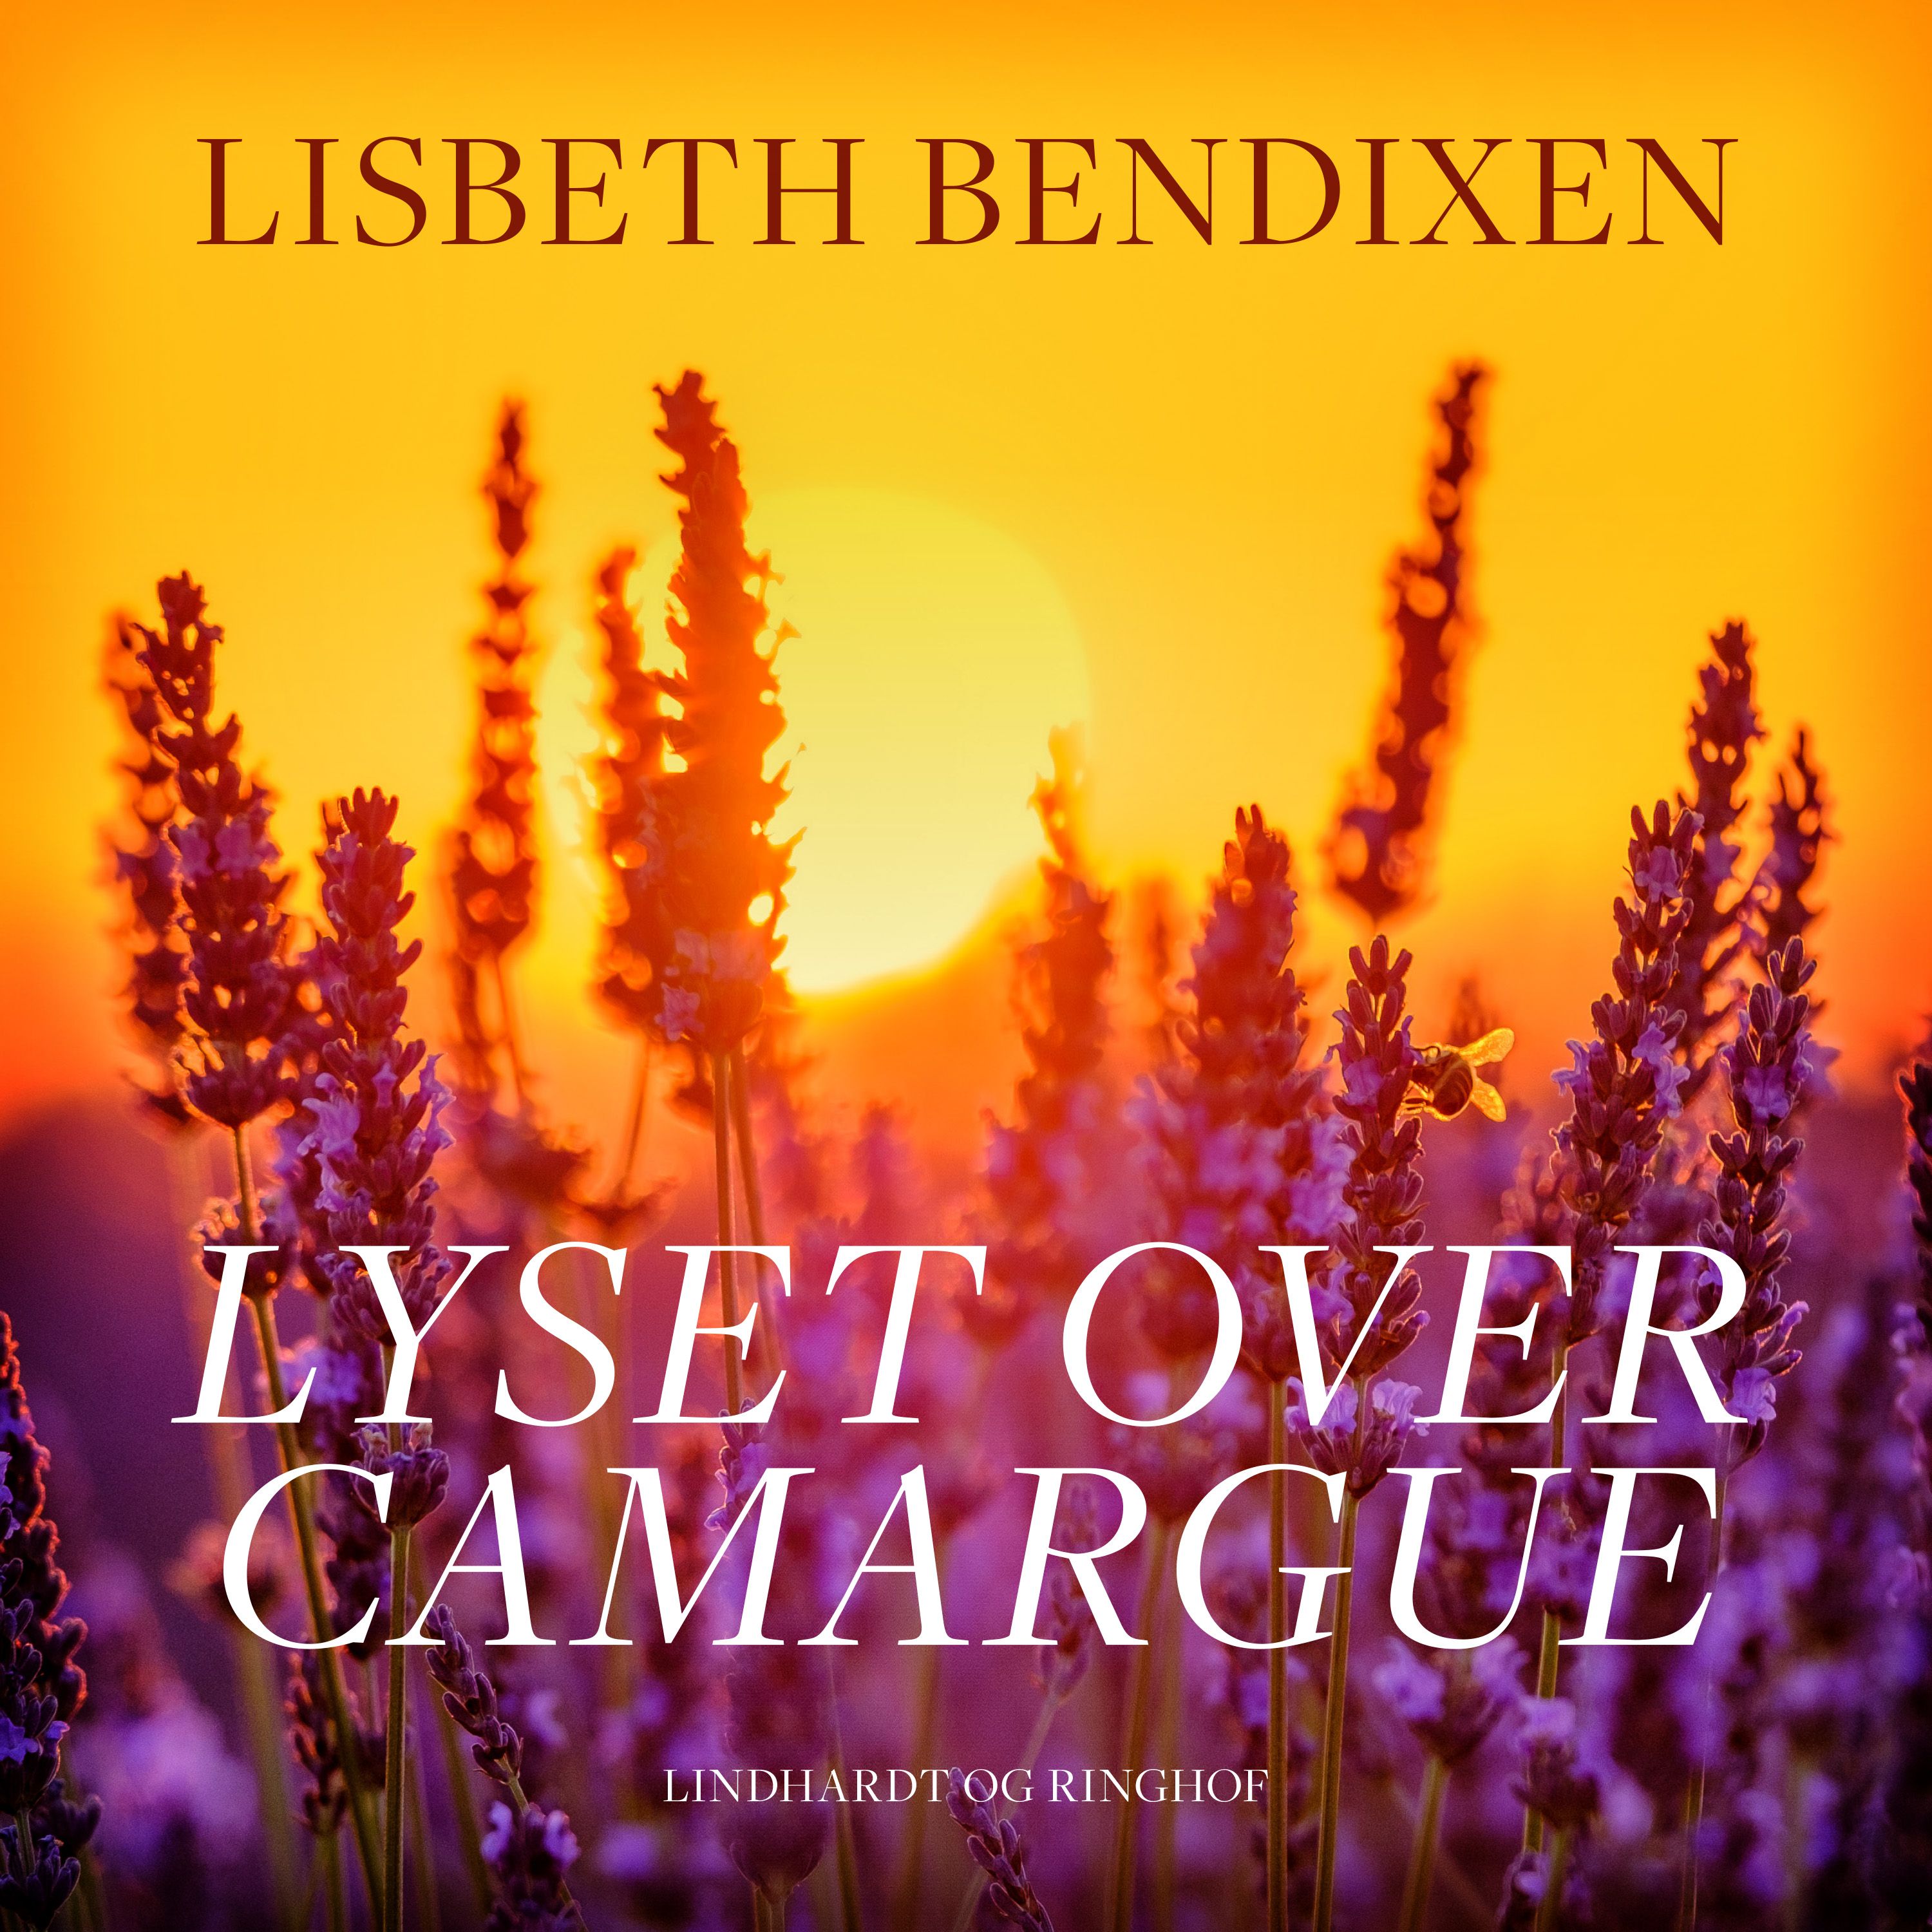 Lyset over Camargue, lydbog af Lisbeth Bendixen